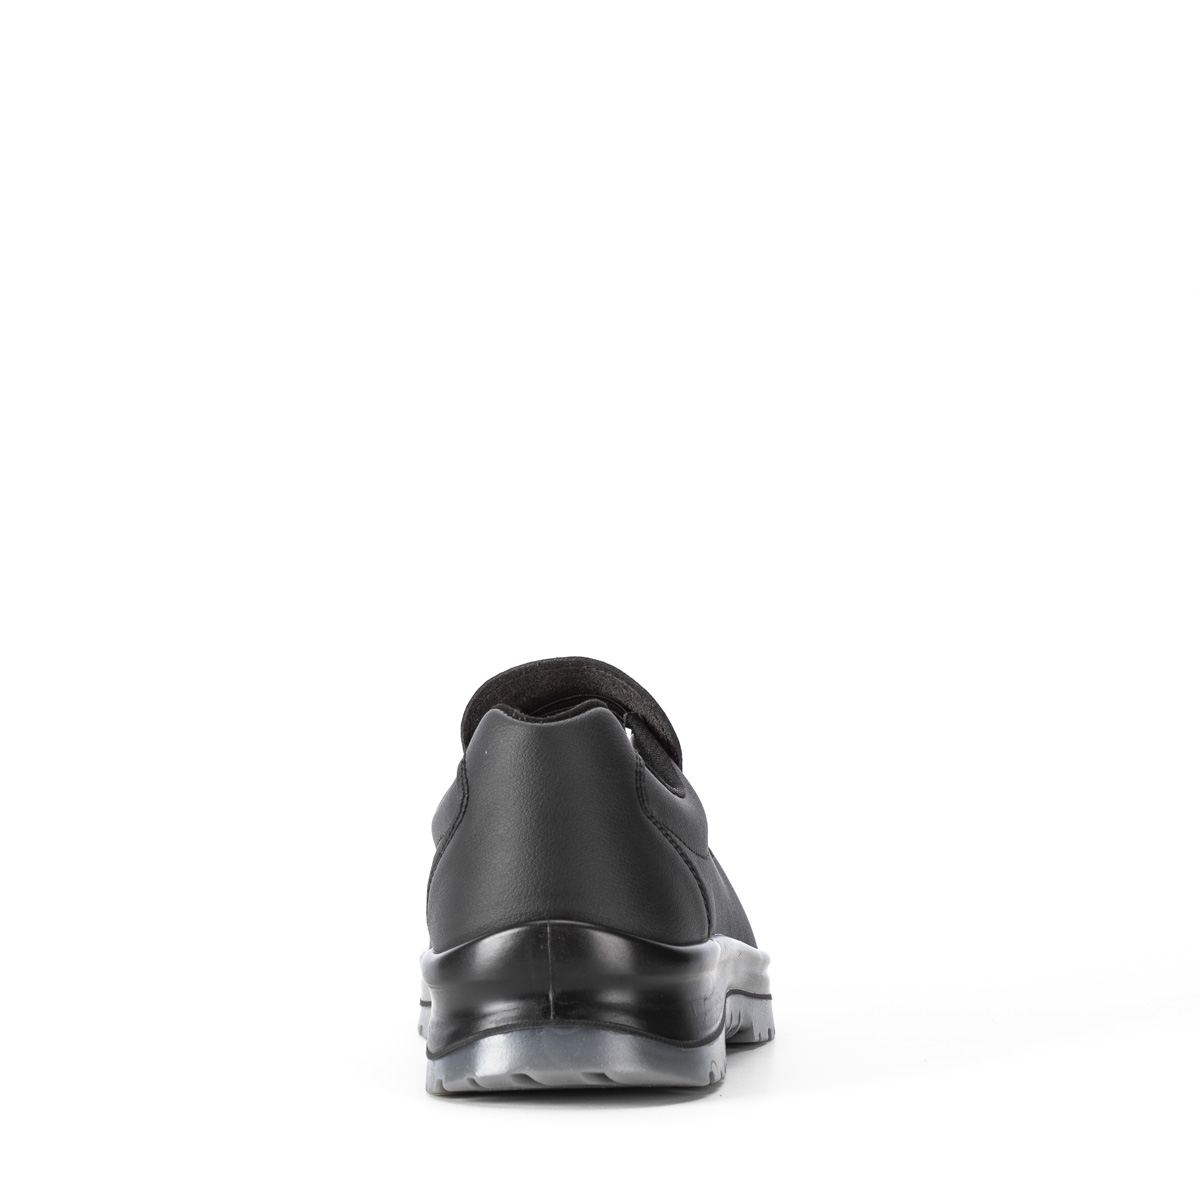 Safety Shoes - SRC 86203-01 Sixton Codice VENEZIA - di con S2 Chaussure Crystal modello classe Peak protezione